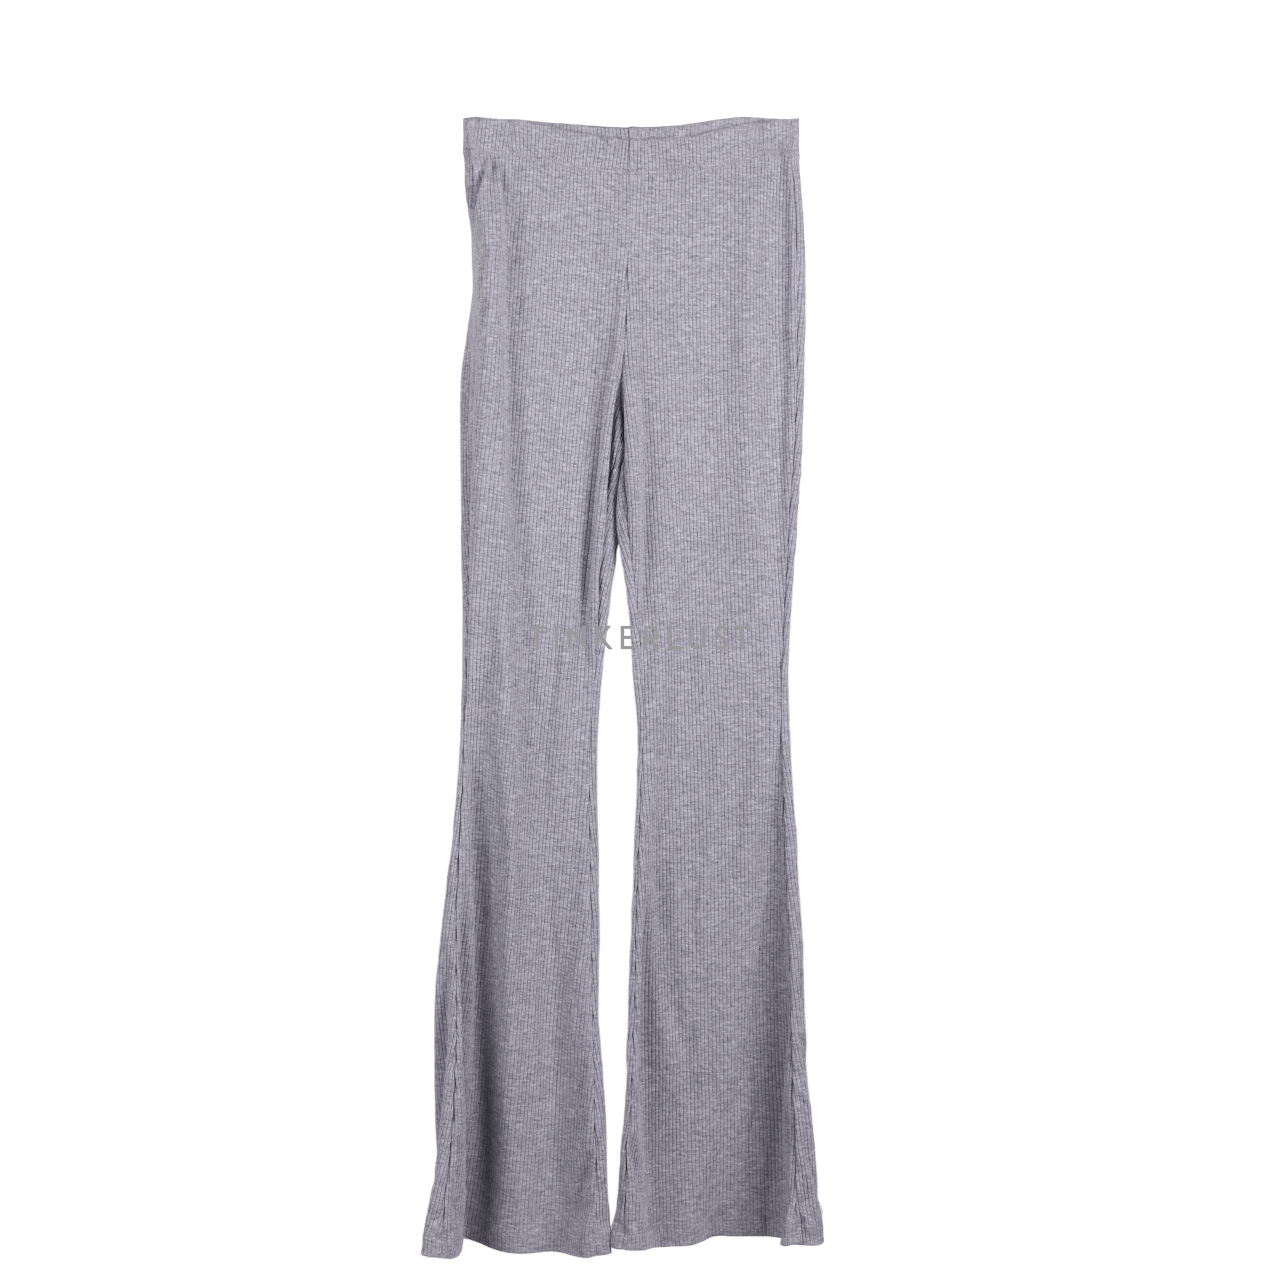 H&M Grey Long Pants